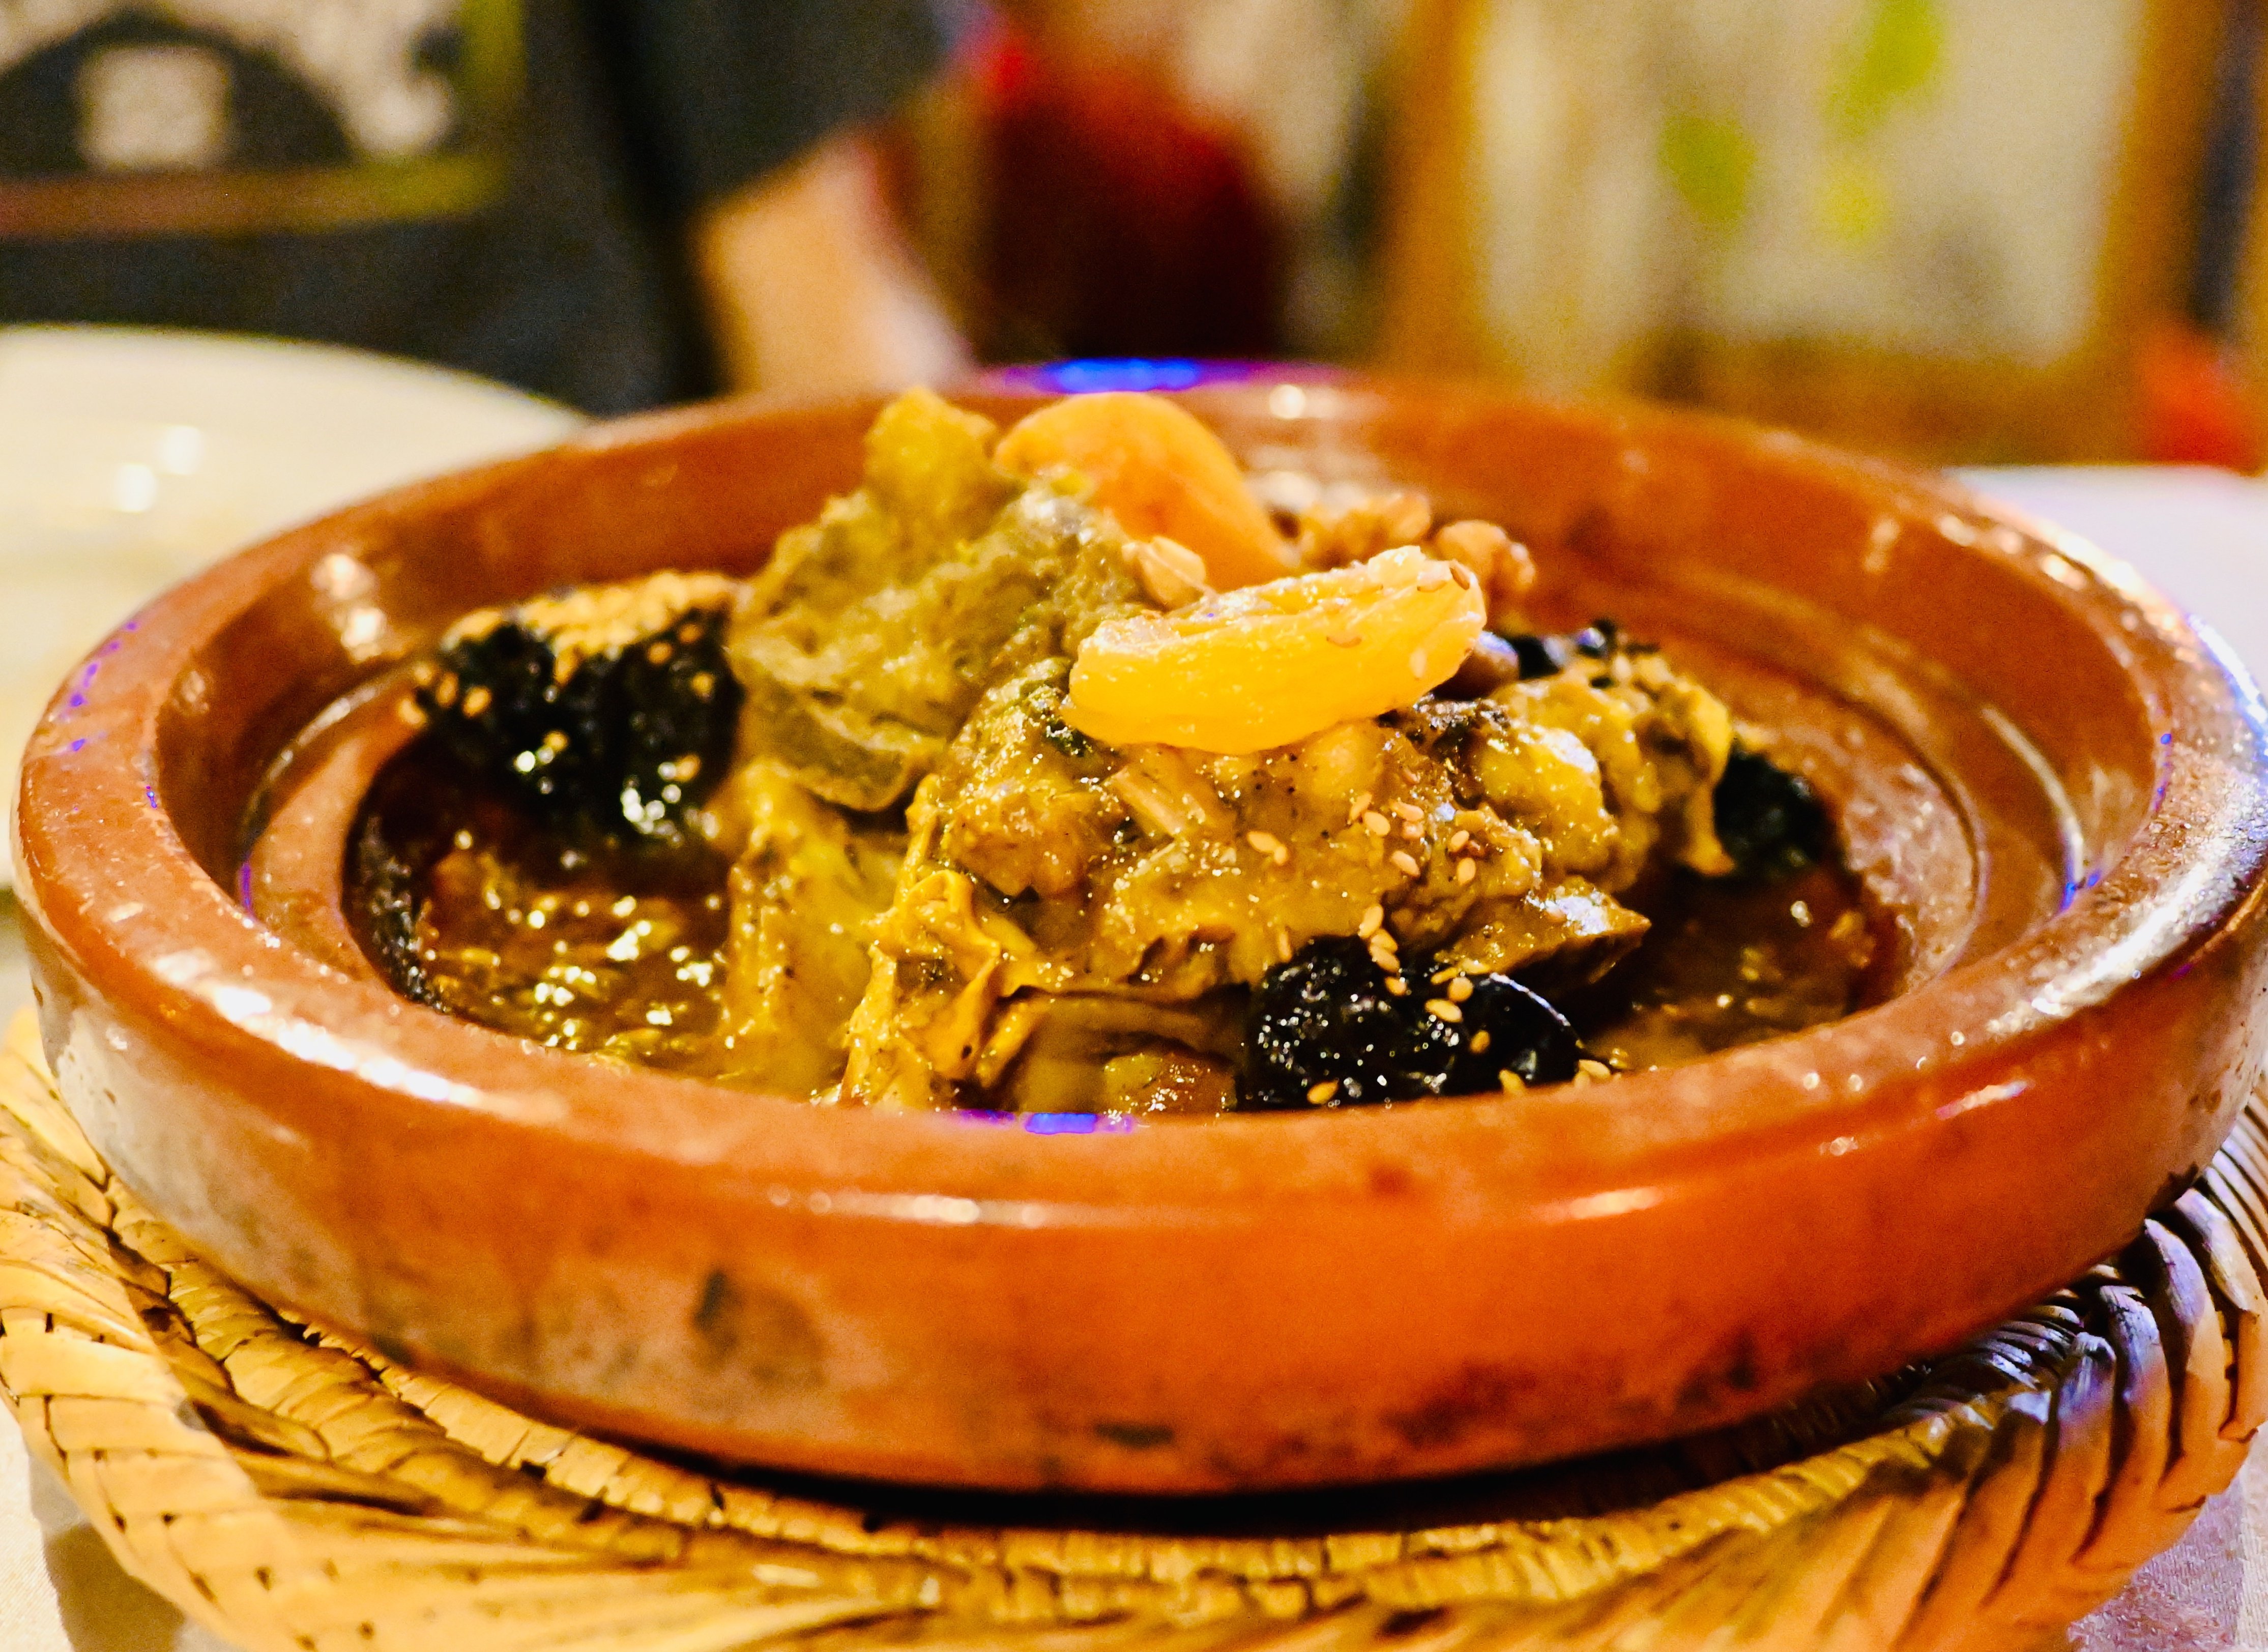 Marokko for family individuell - Erfahrungen mit Kindern in Marokko - marokkanische Küche